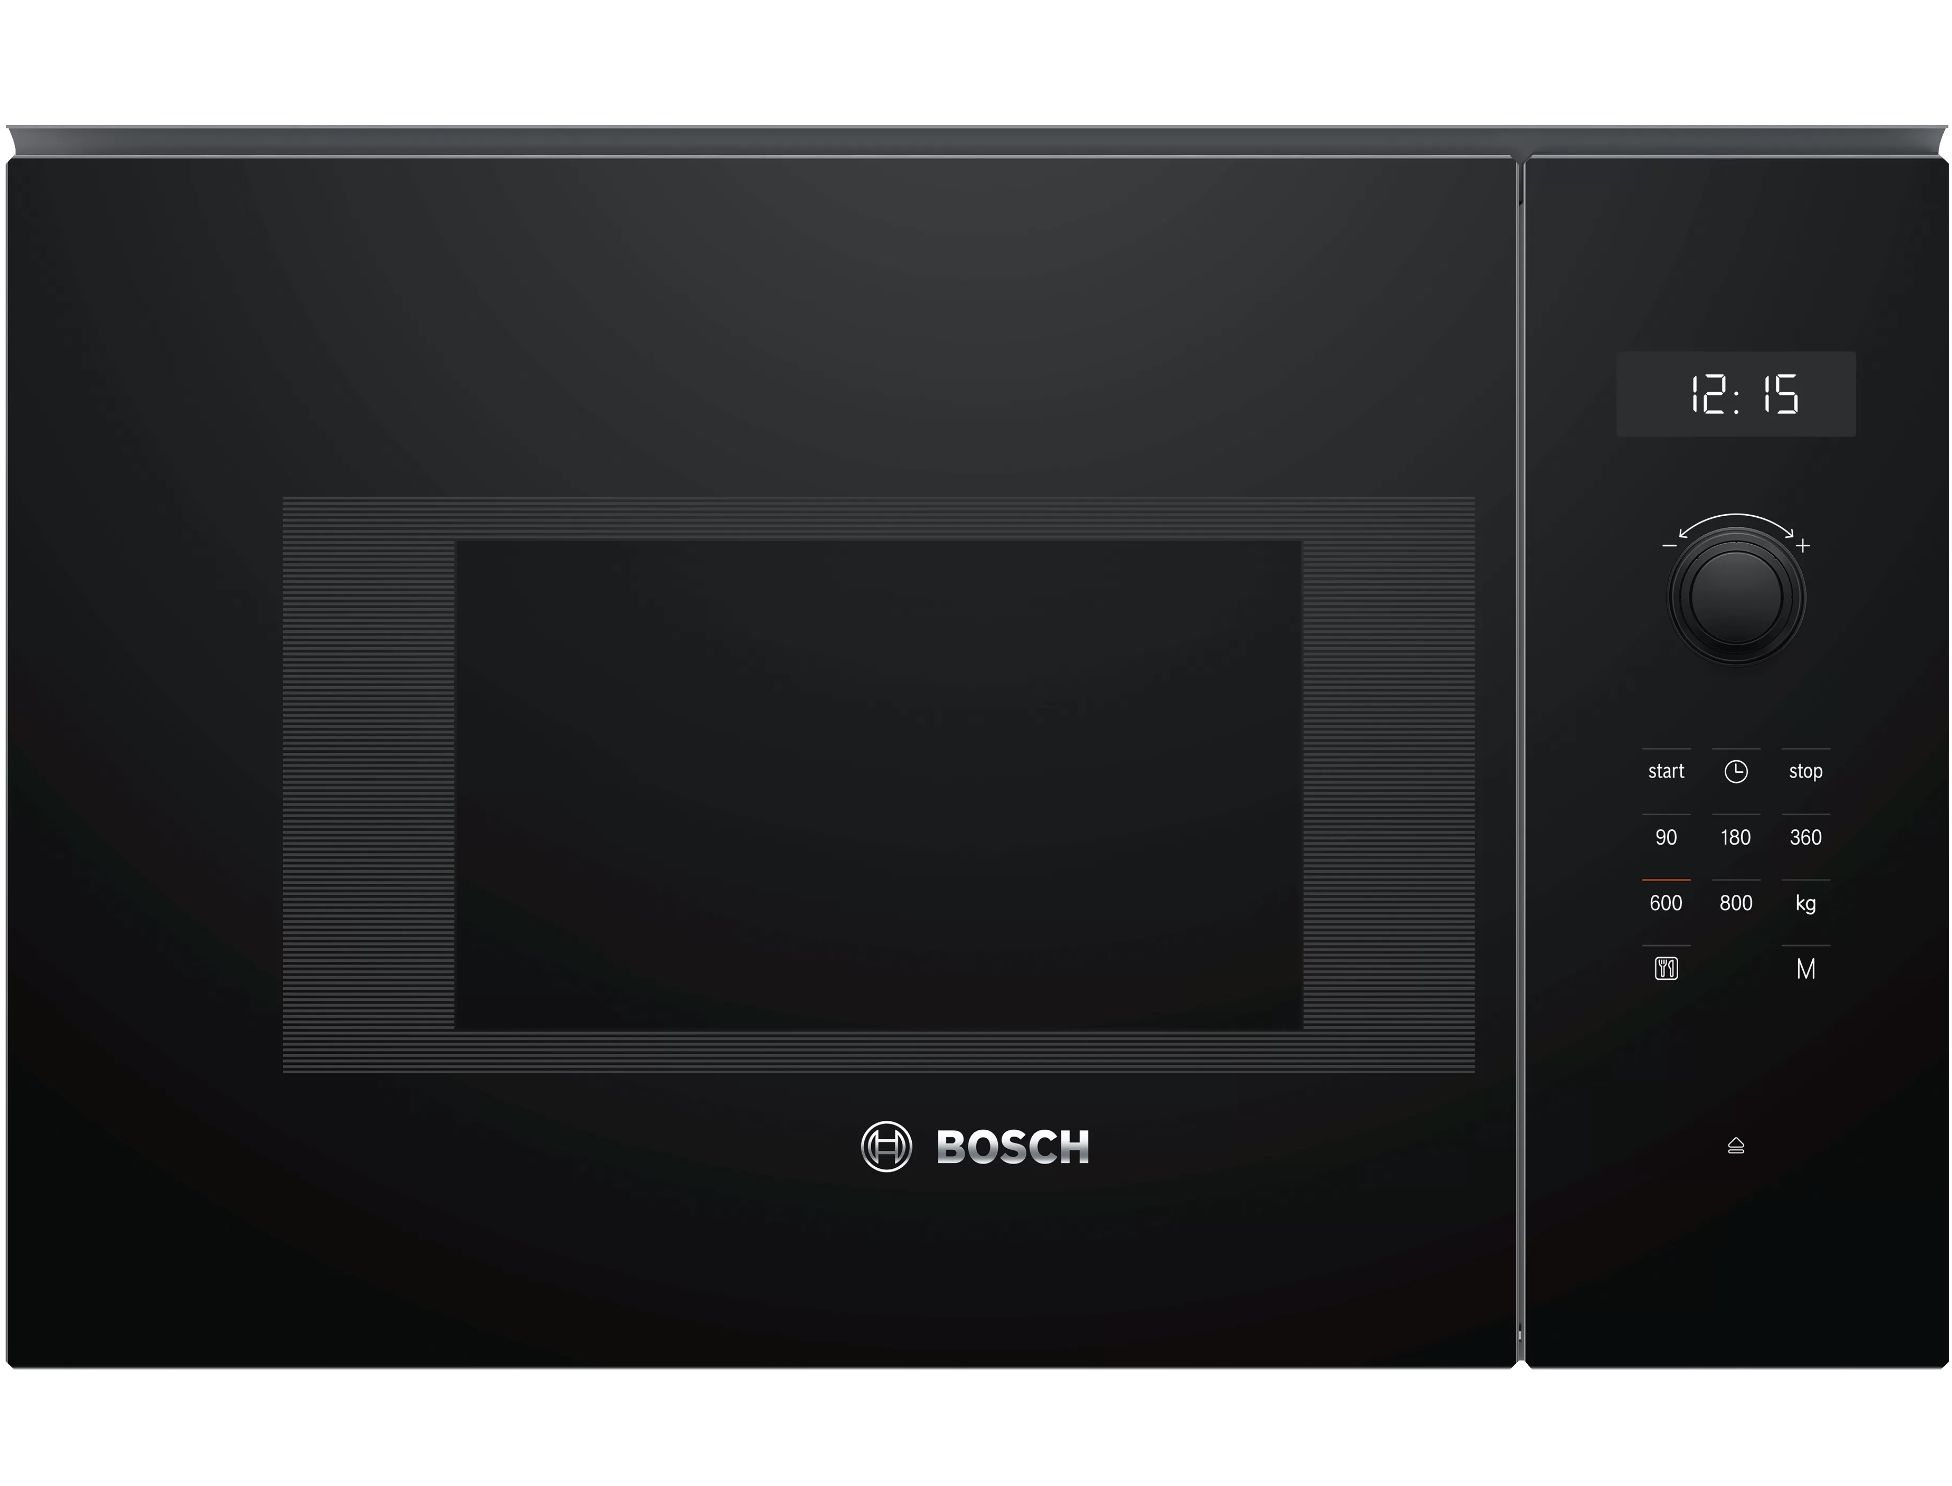 Встроенная микроволновая печь bosch черная. Микроволновая печь встраиваемая Bosch bel524mb0. Микроволновая печь встраиваемая Bosch bfl554ms0. Микроволновая печь Teka MWE 207 Fi Black. Микроволновая печь Bosch bel554ms0.